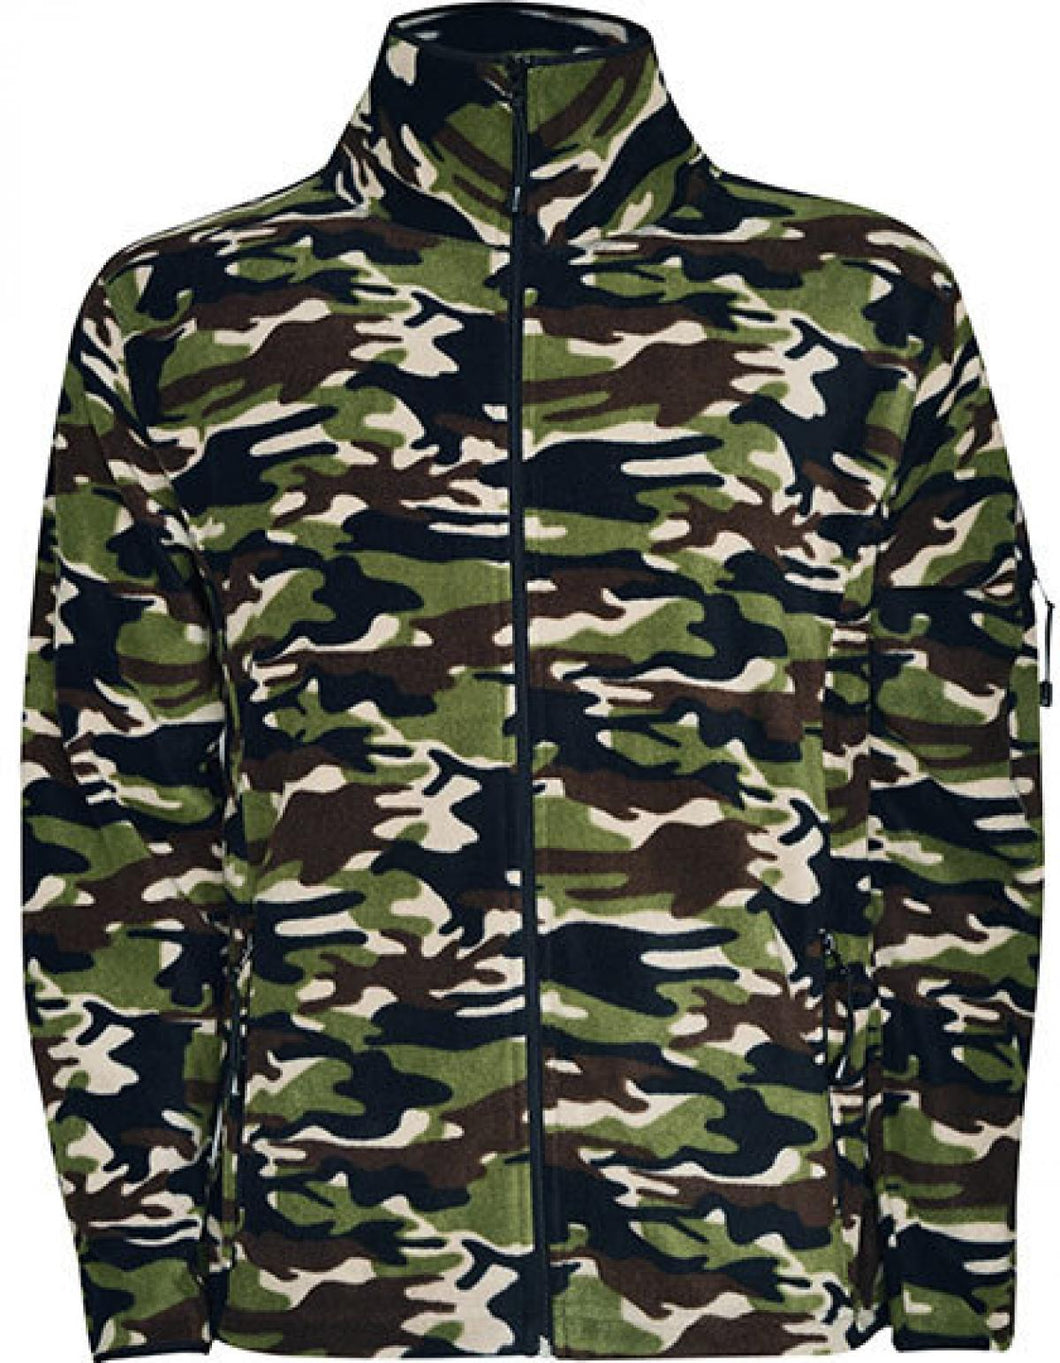 Mens Outdoor wear - CAMO Fleece SIZE XL